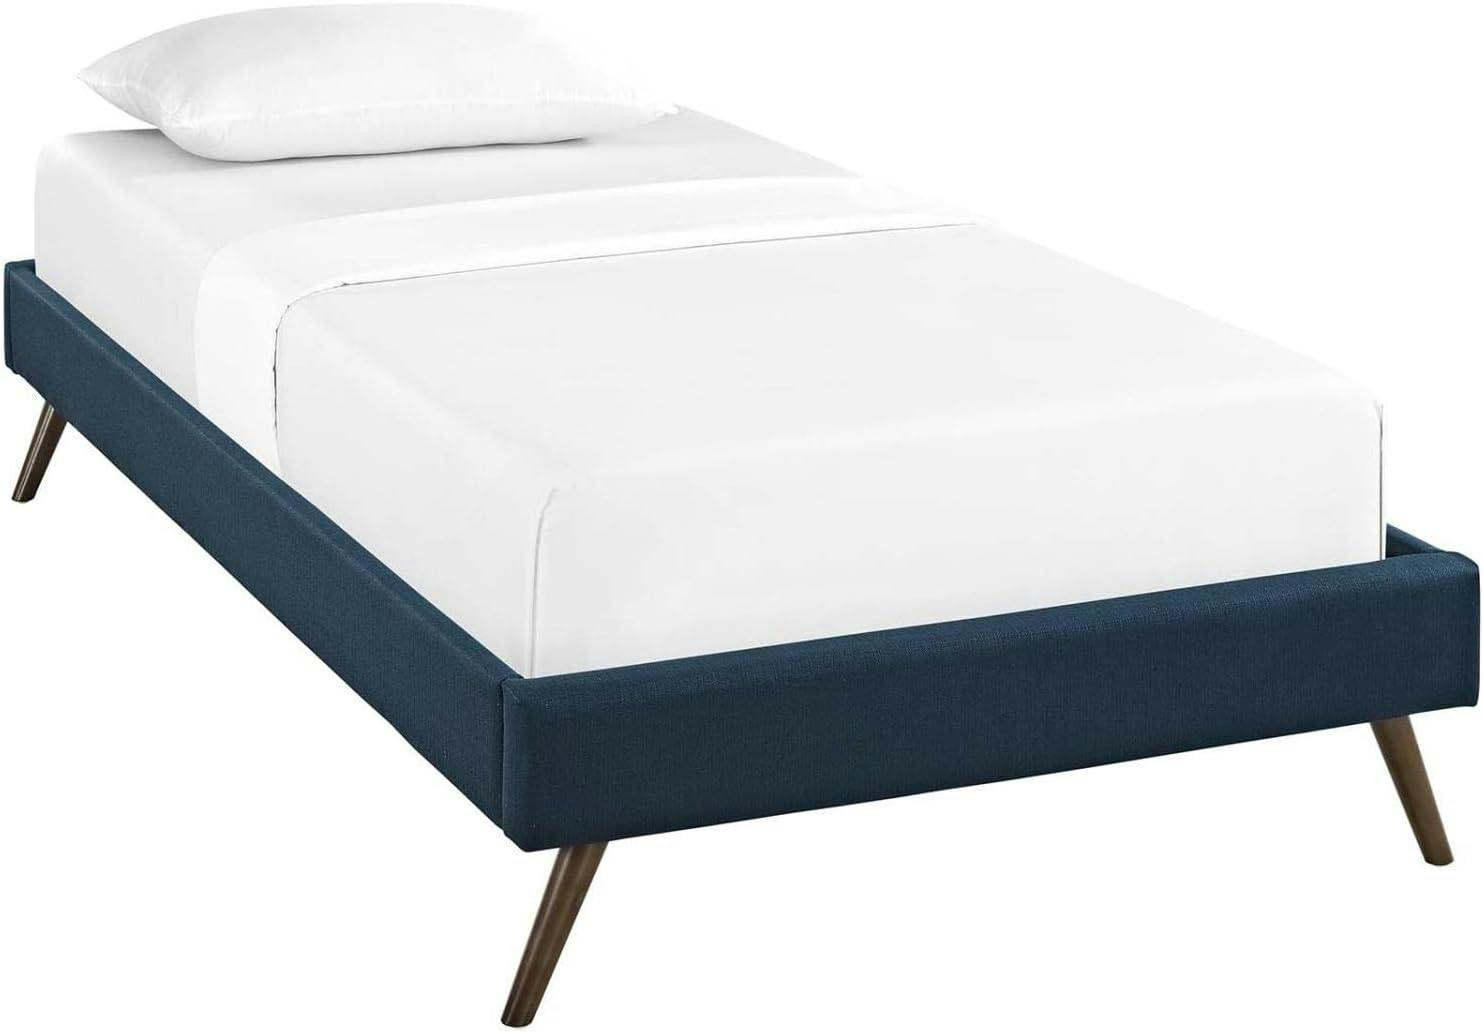 Azure Twin Upholstered Wood Frame Platform Bed with Slats